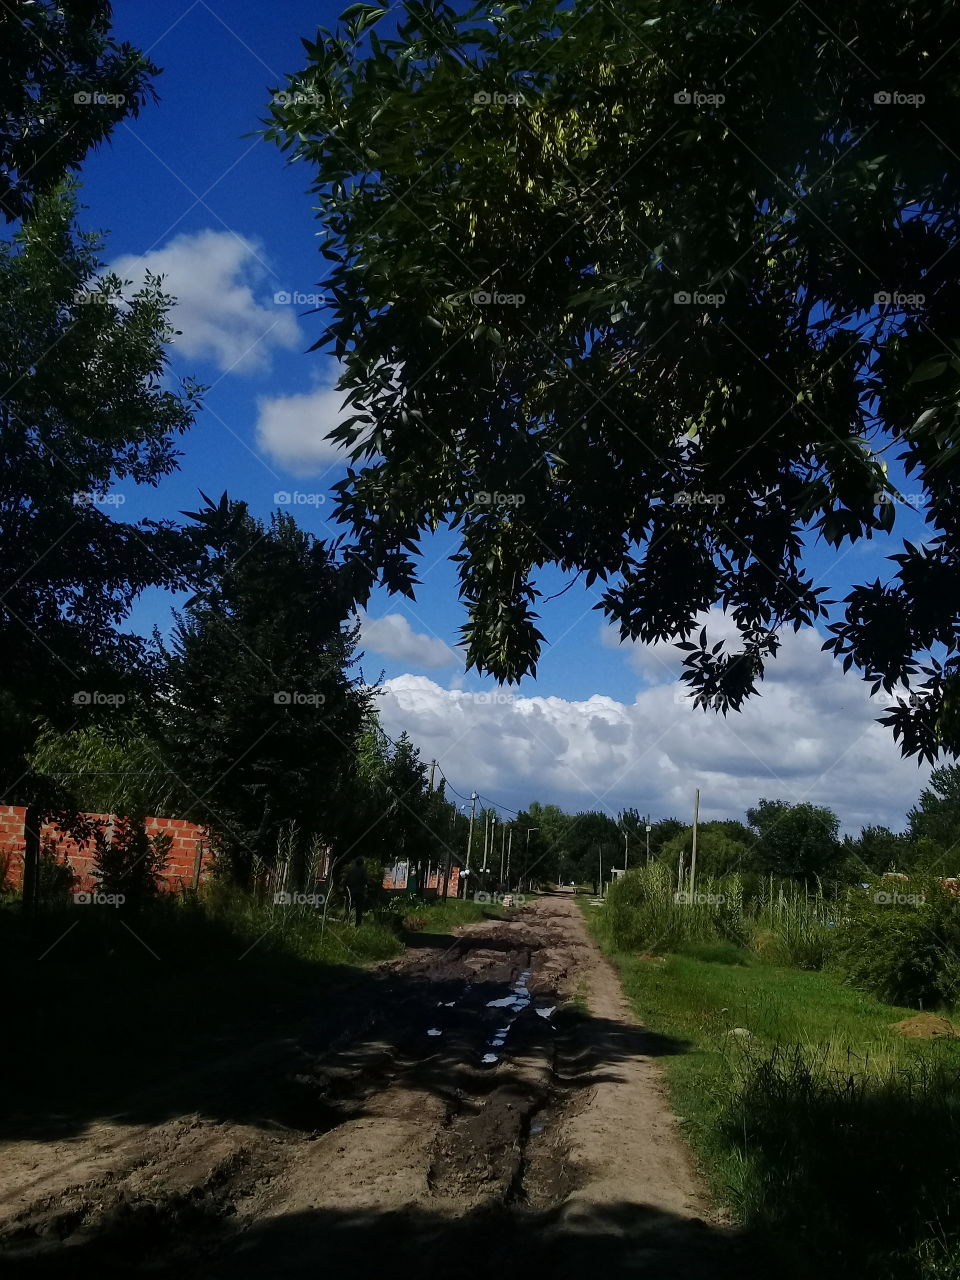 vista de una típica calle rural, de tierra, luego de una lluvia, cuyos charcos de agua reflejan el azul del cielo.